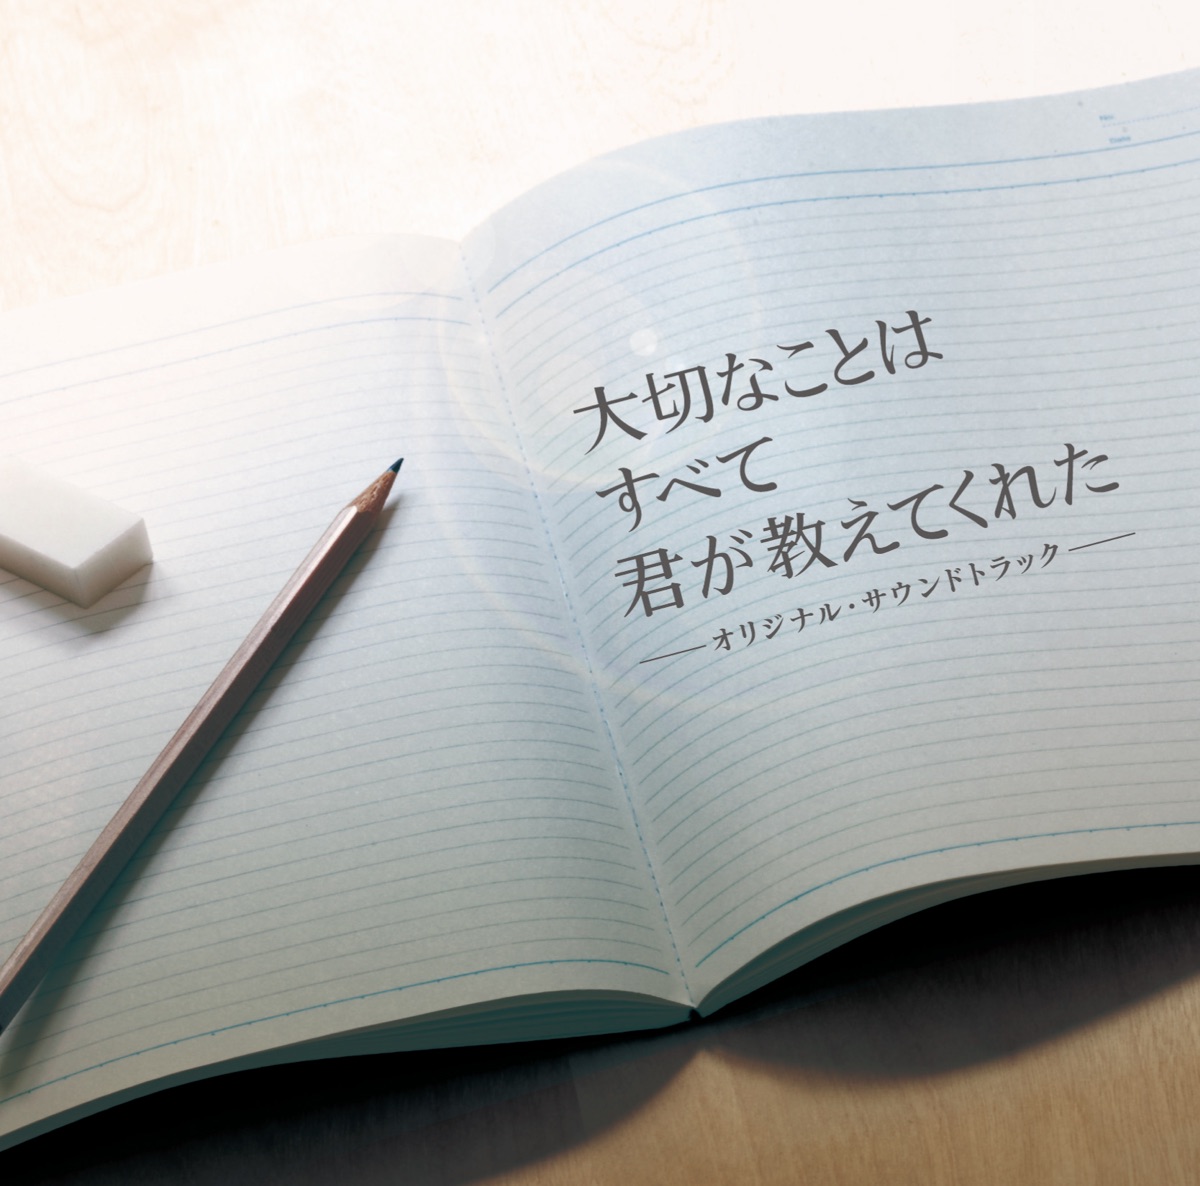 Ken Araiの「フジテレビ系ドラマ「失恋ショコラティエ」オリジナルサウンドトラック~Extra Track~ - EP」をiTunesで